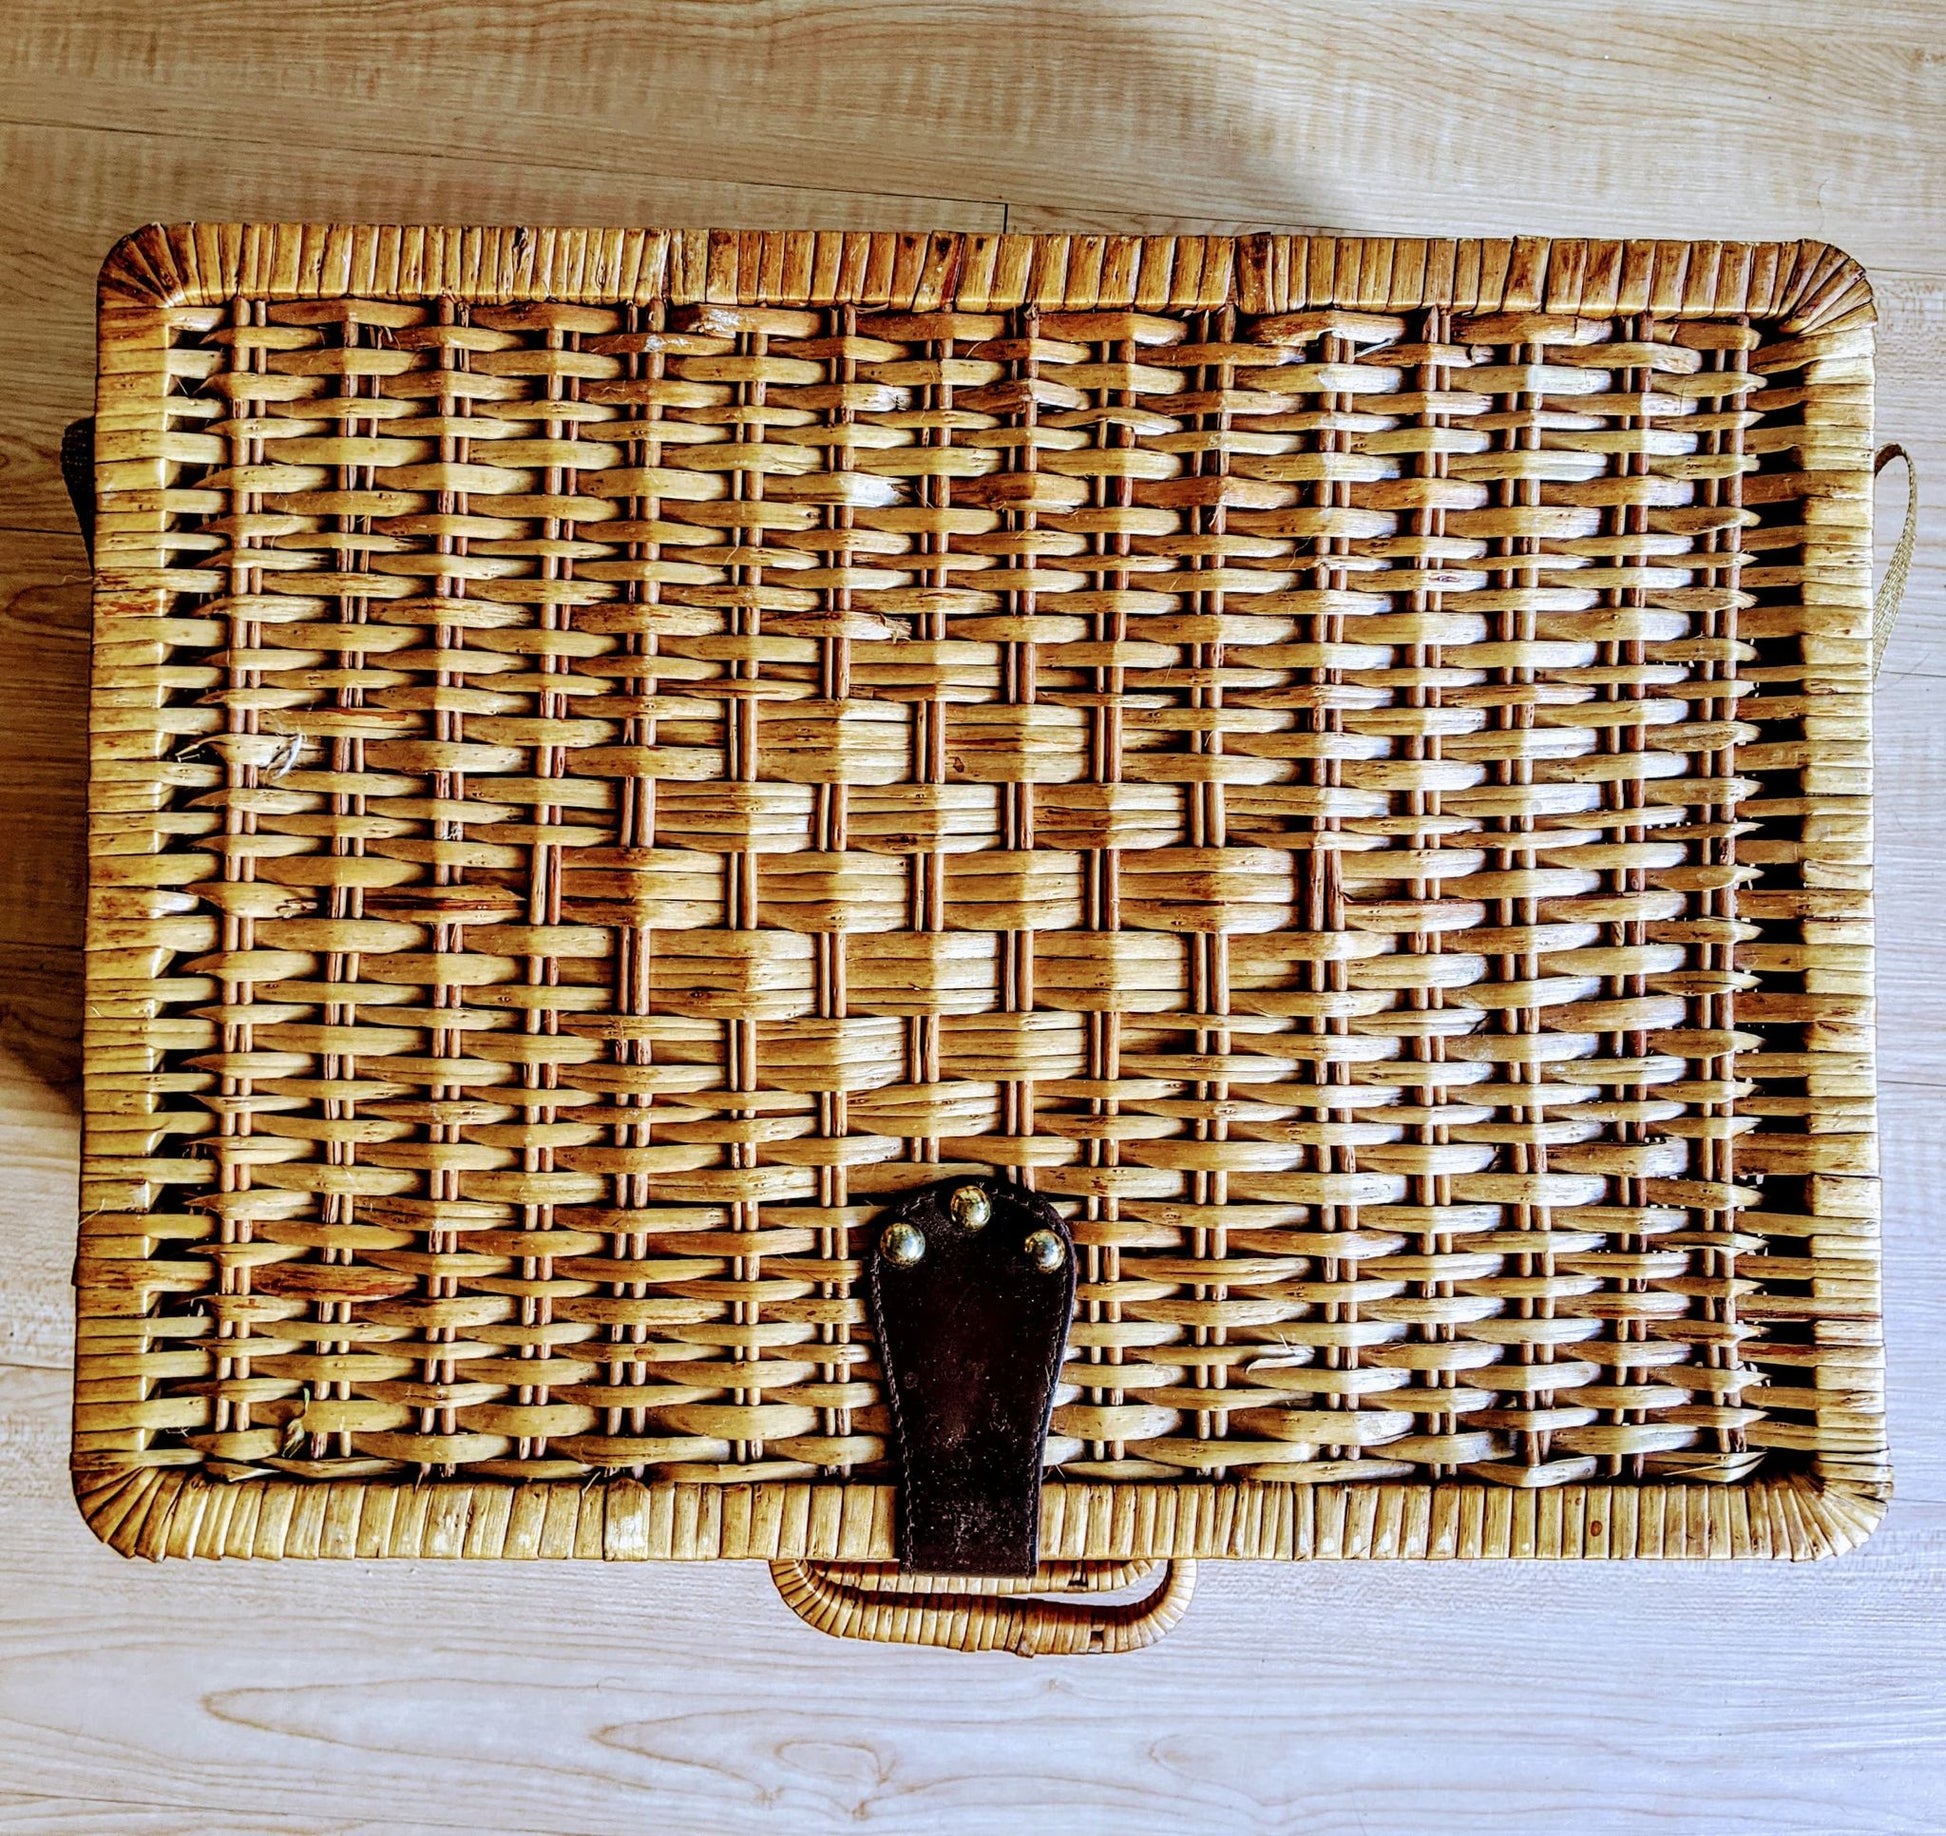 Wicker Picnic Basket Vintage Brown Retro